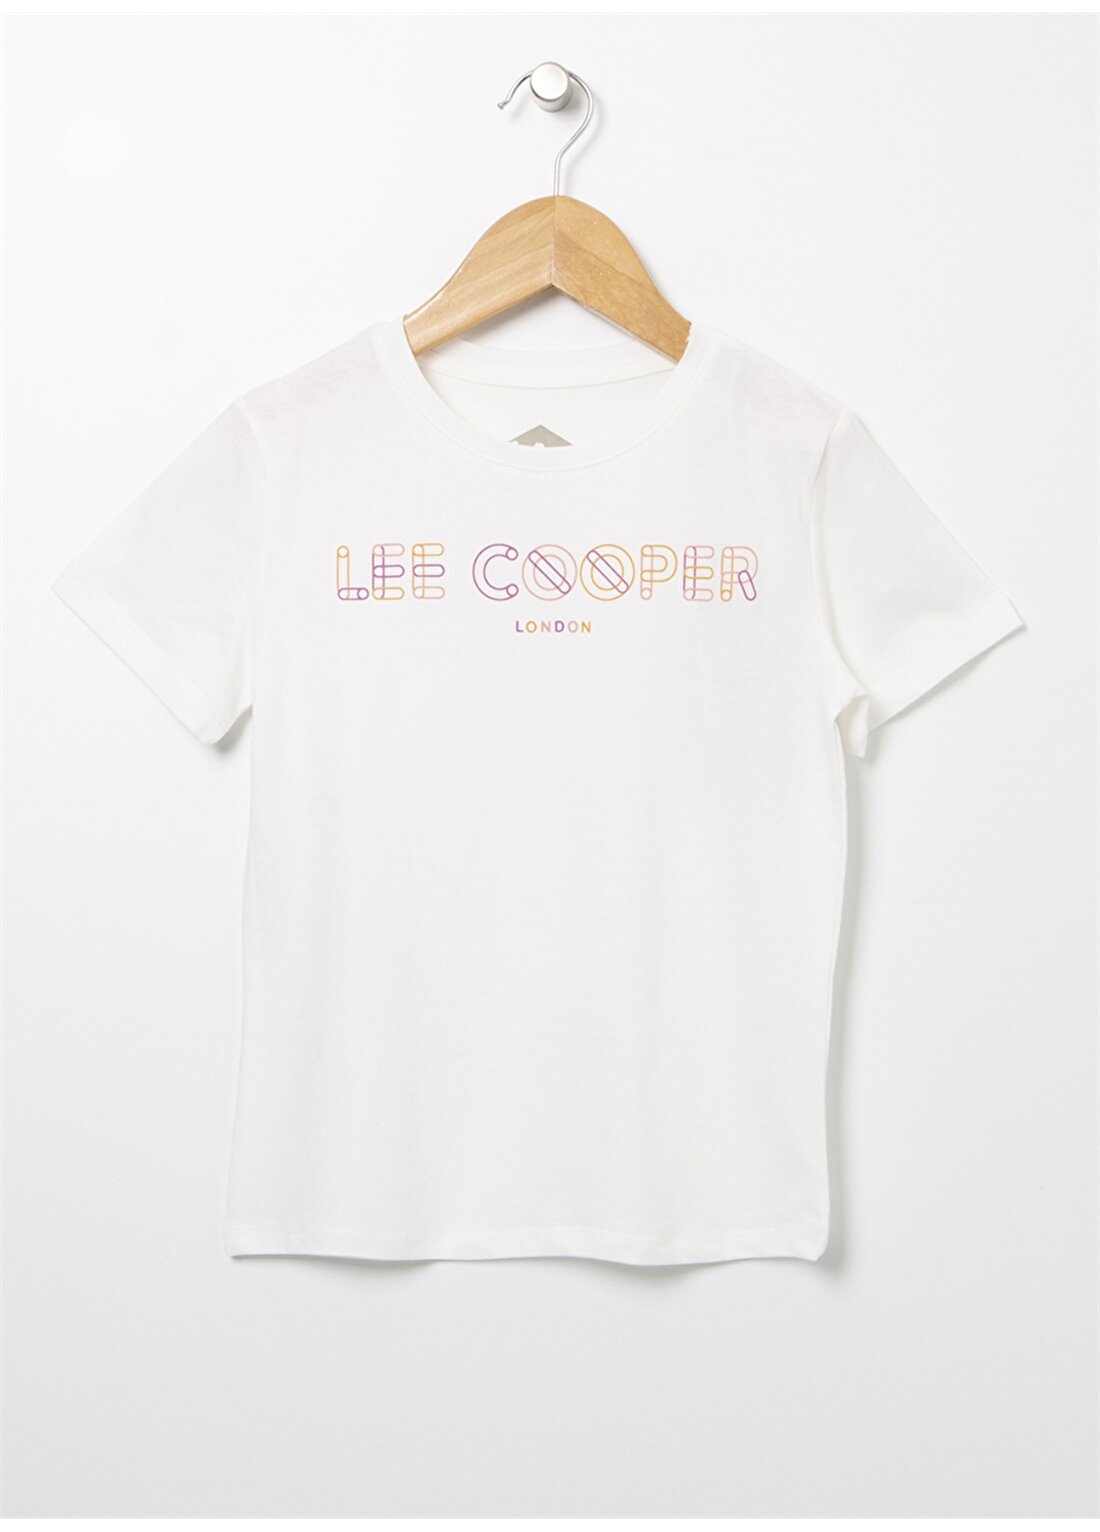 Lee Cooper Açık Beyaz Kız Çocuk Bisiklet Yaka Kısa Kollu Baskılı T-Shirt 222 LCG 242005 NEON OFF WHITE